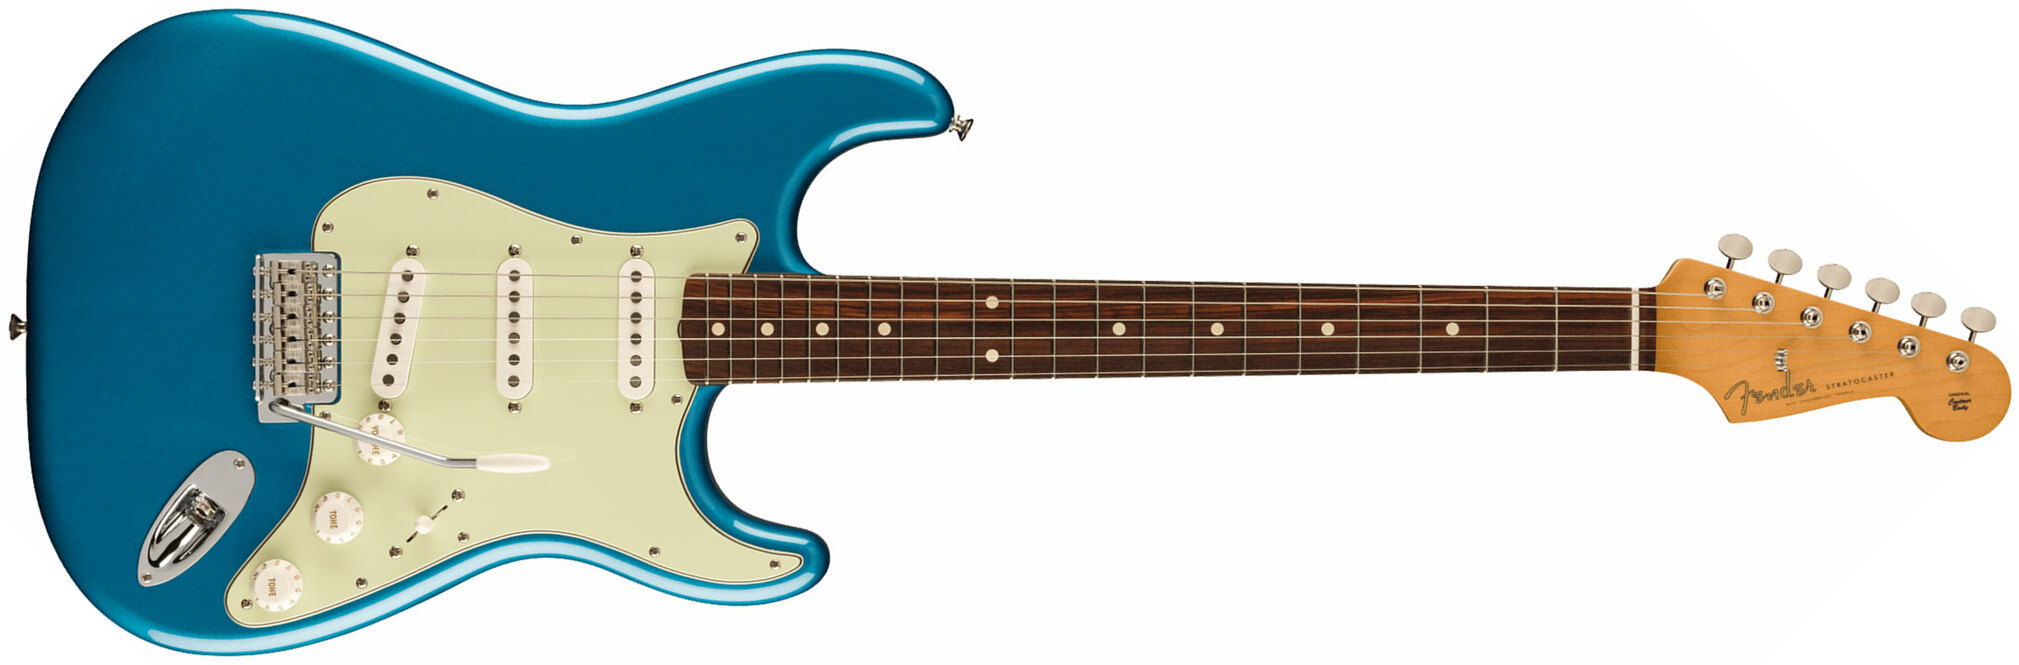 Fender Strat 60s Vintera 2 Mex 3s Trem Rw - Lake Placid Blue - Elektrische gitaar in Str-vorm - Main picture